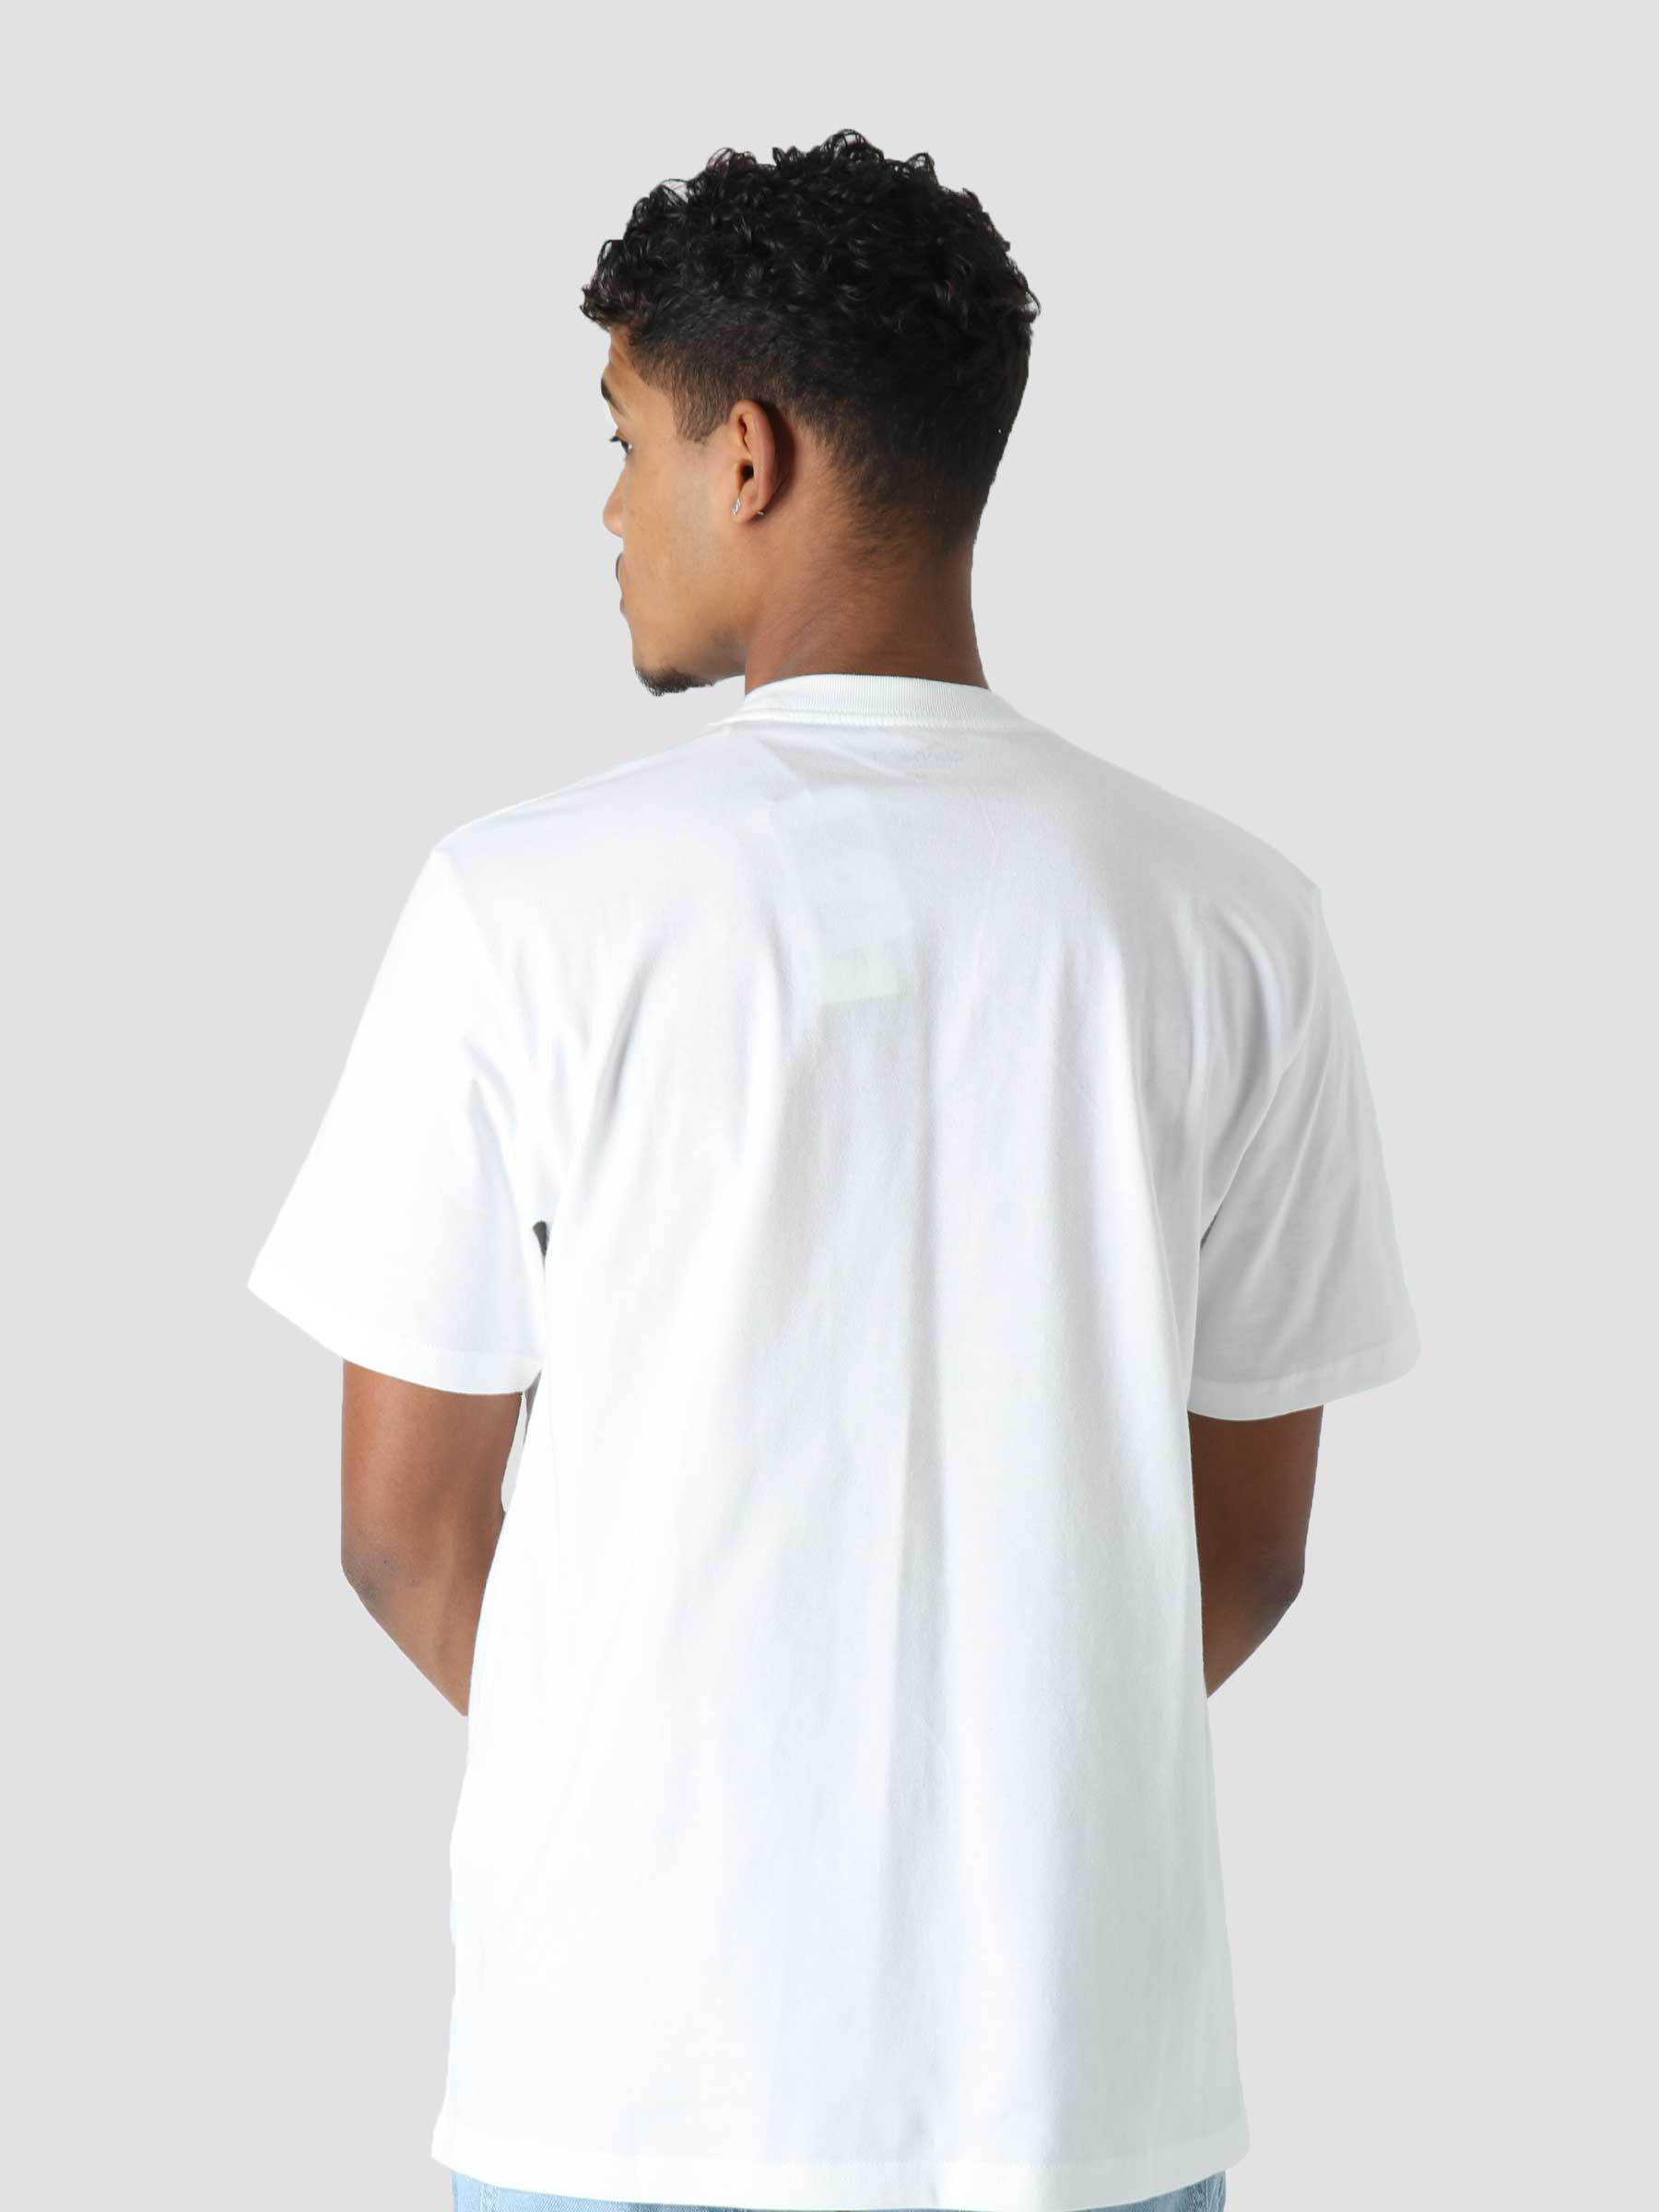 S/S 313 Duckdivision T-Shirt White I030206-02XX